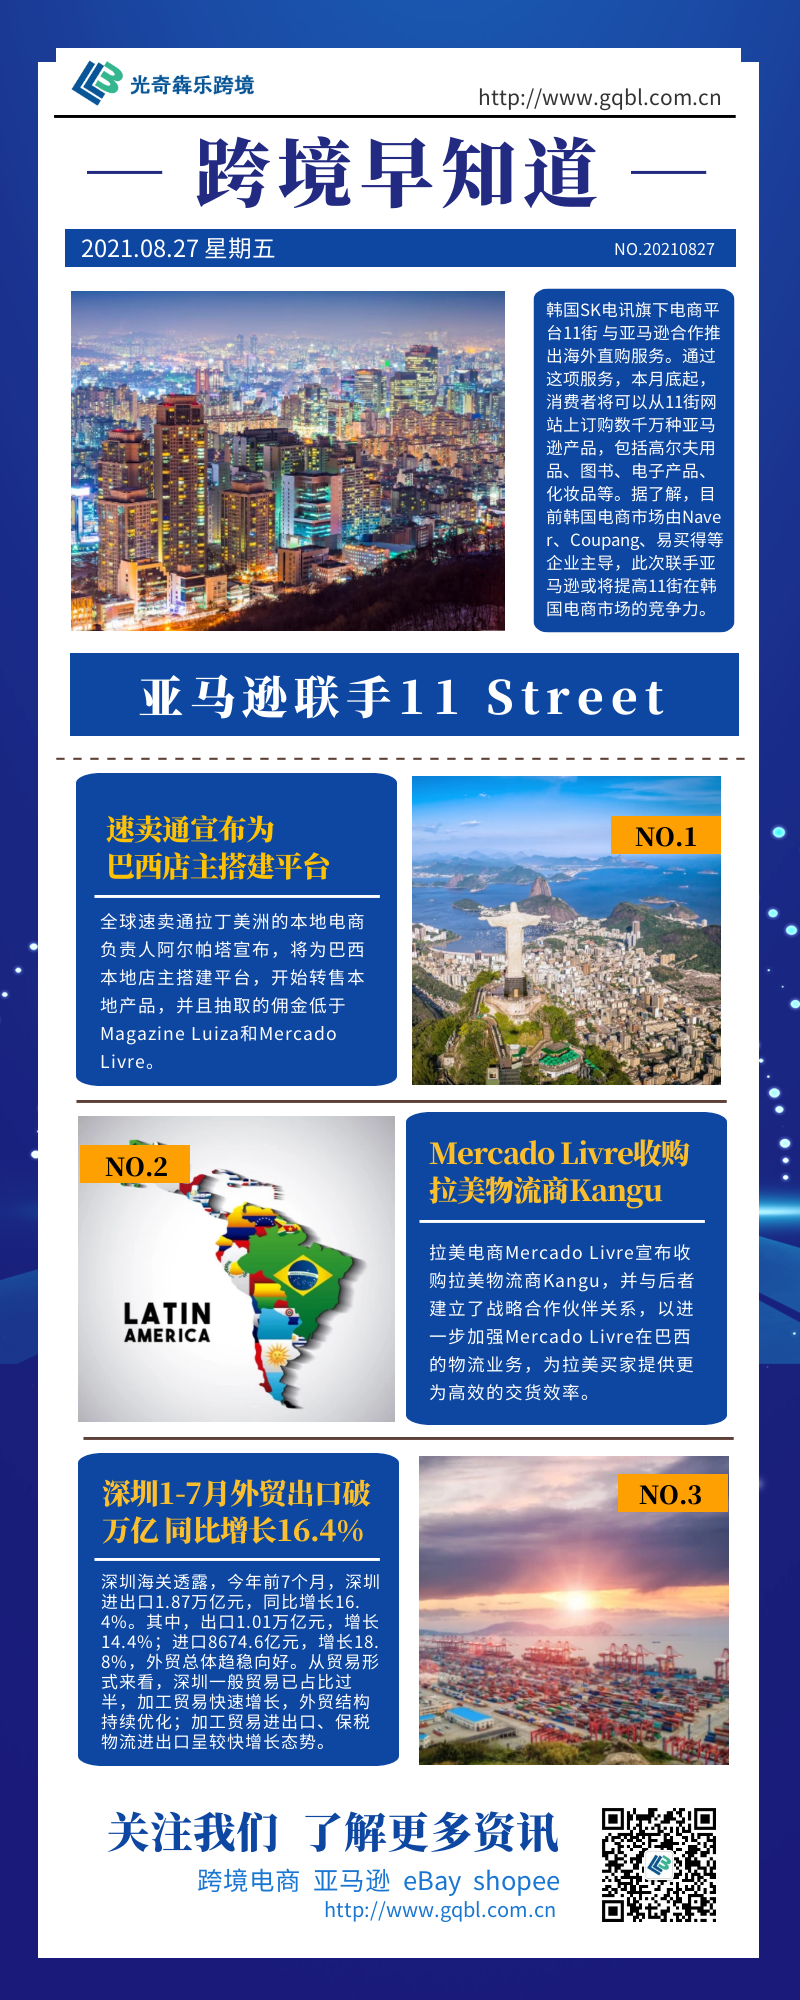 亚马逊联手11 Street在韩国推出海外直购服务